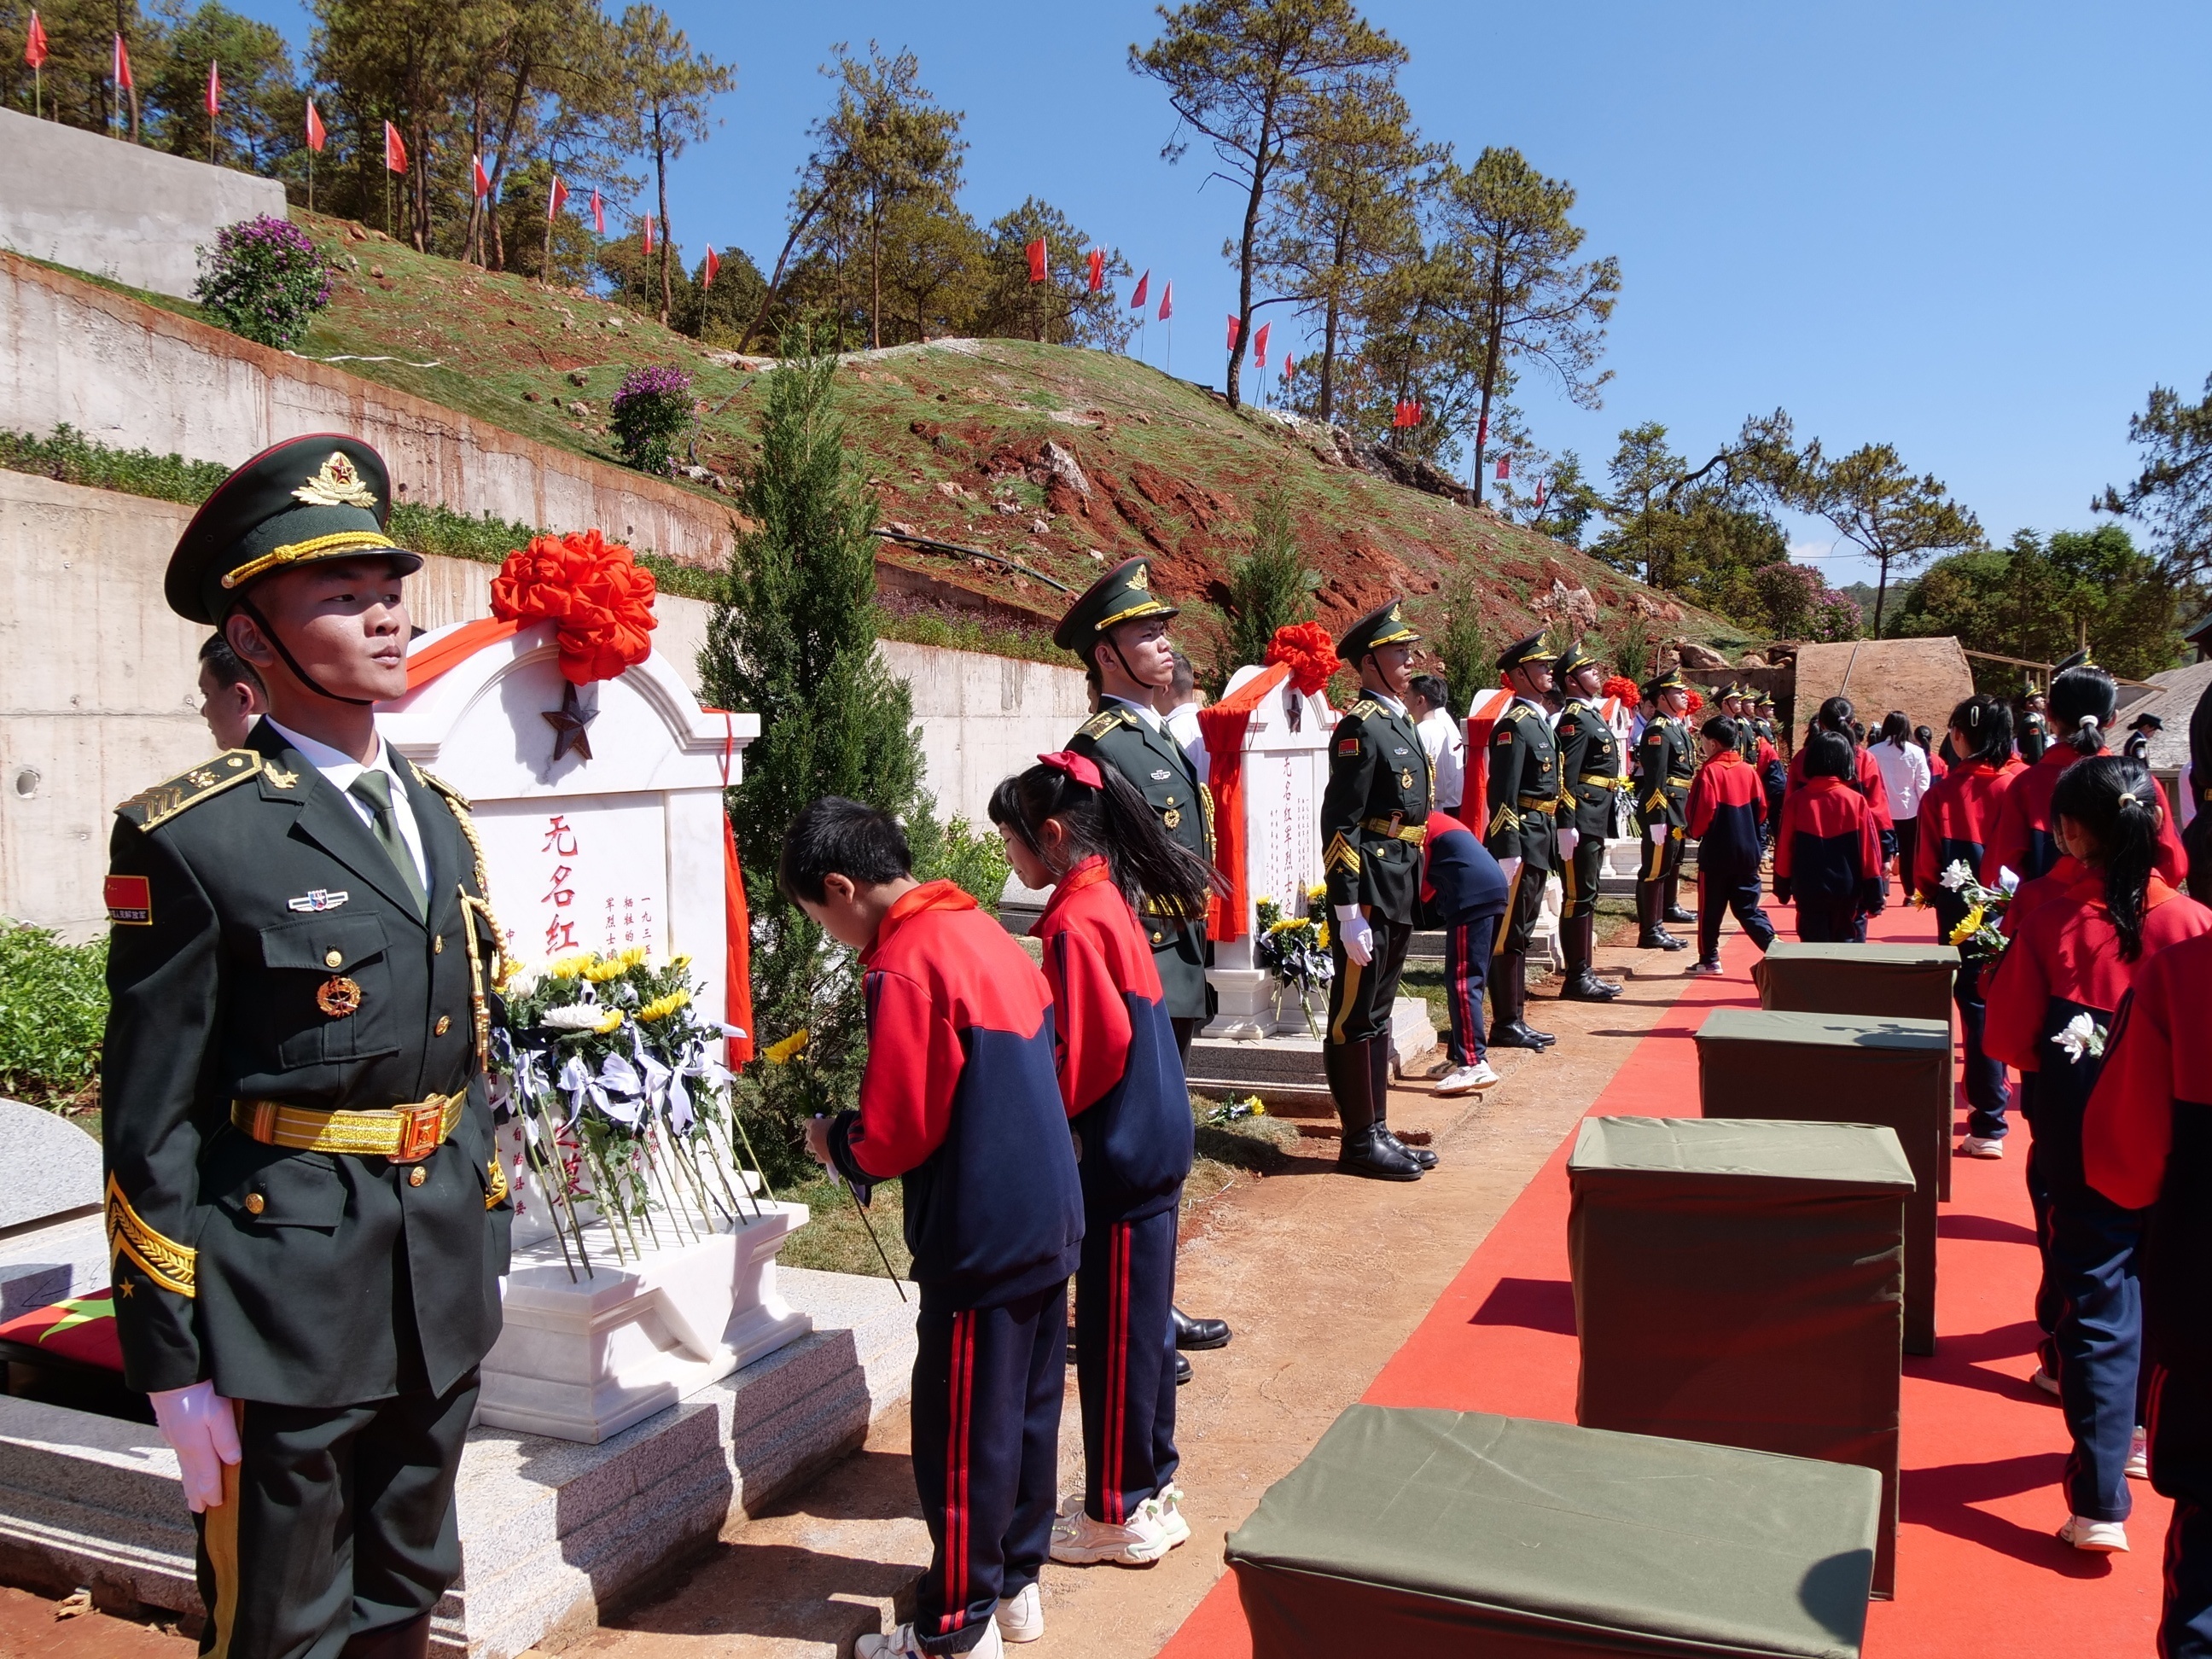 21具红军烈士遗骸入土为安:年龄小的仅14岁至15岁 